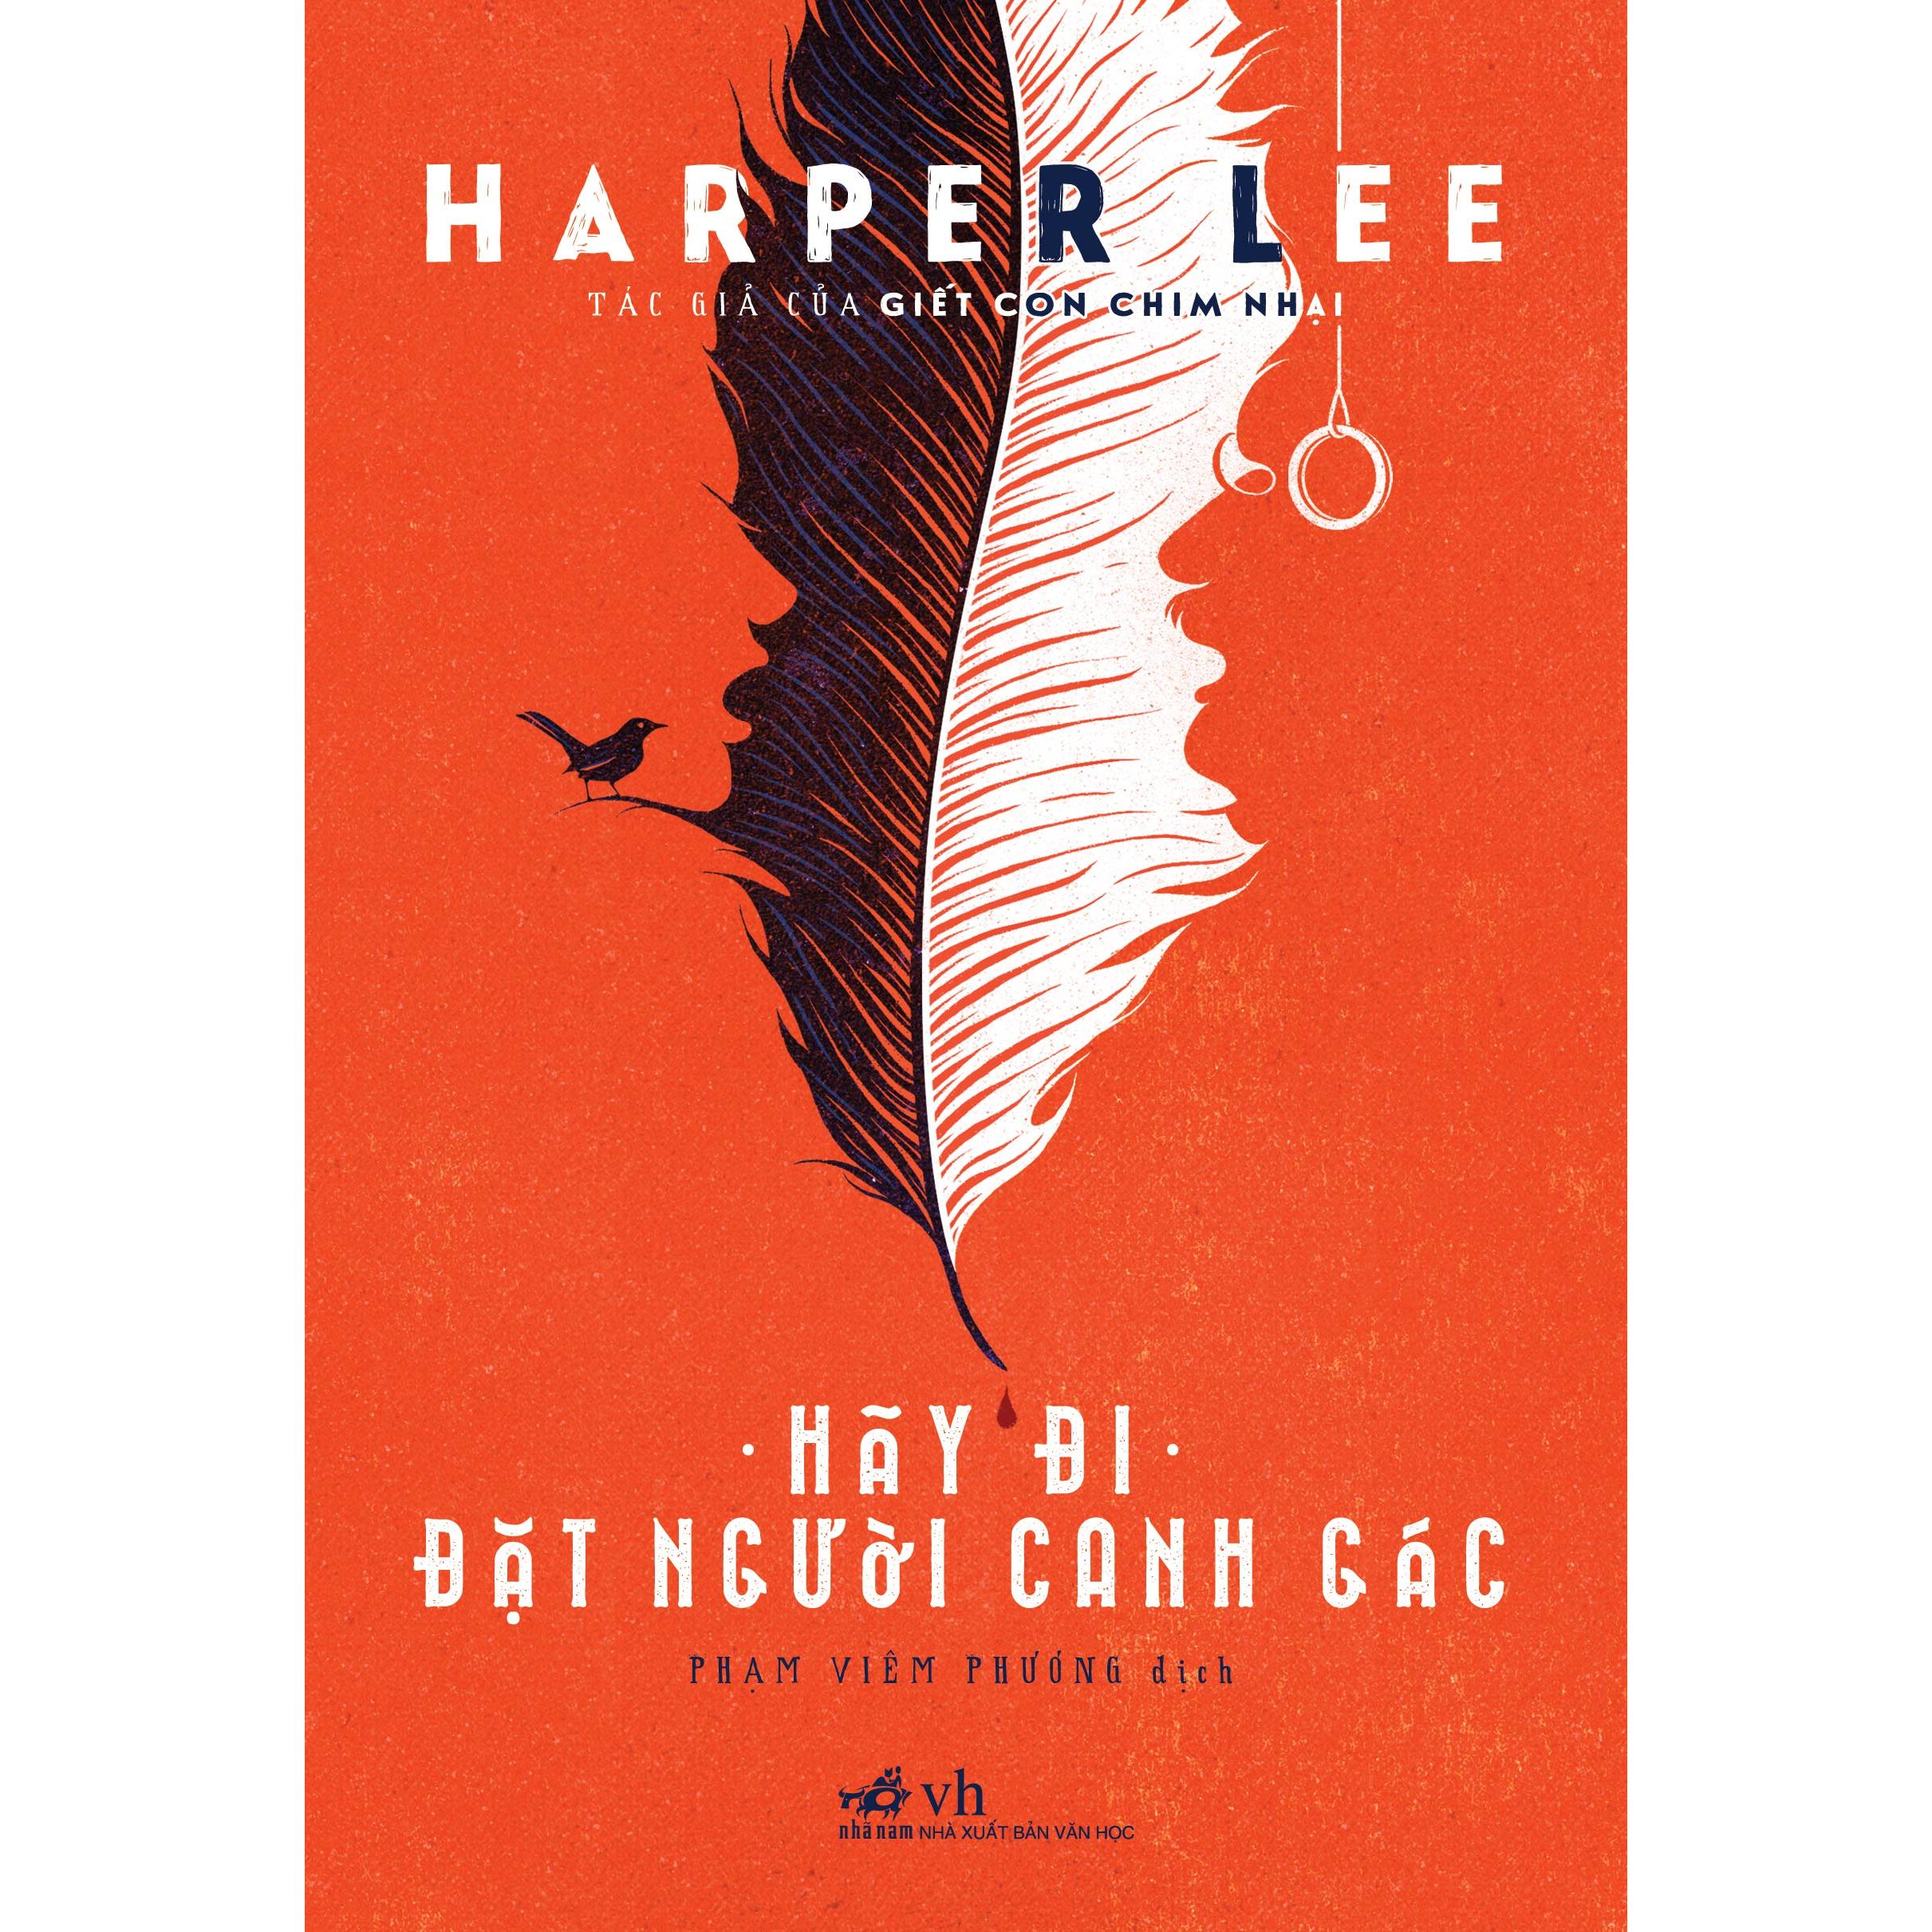 Hãy đi đặt người canh gác (Harper Lee) - Bản Quyền